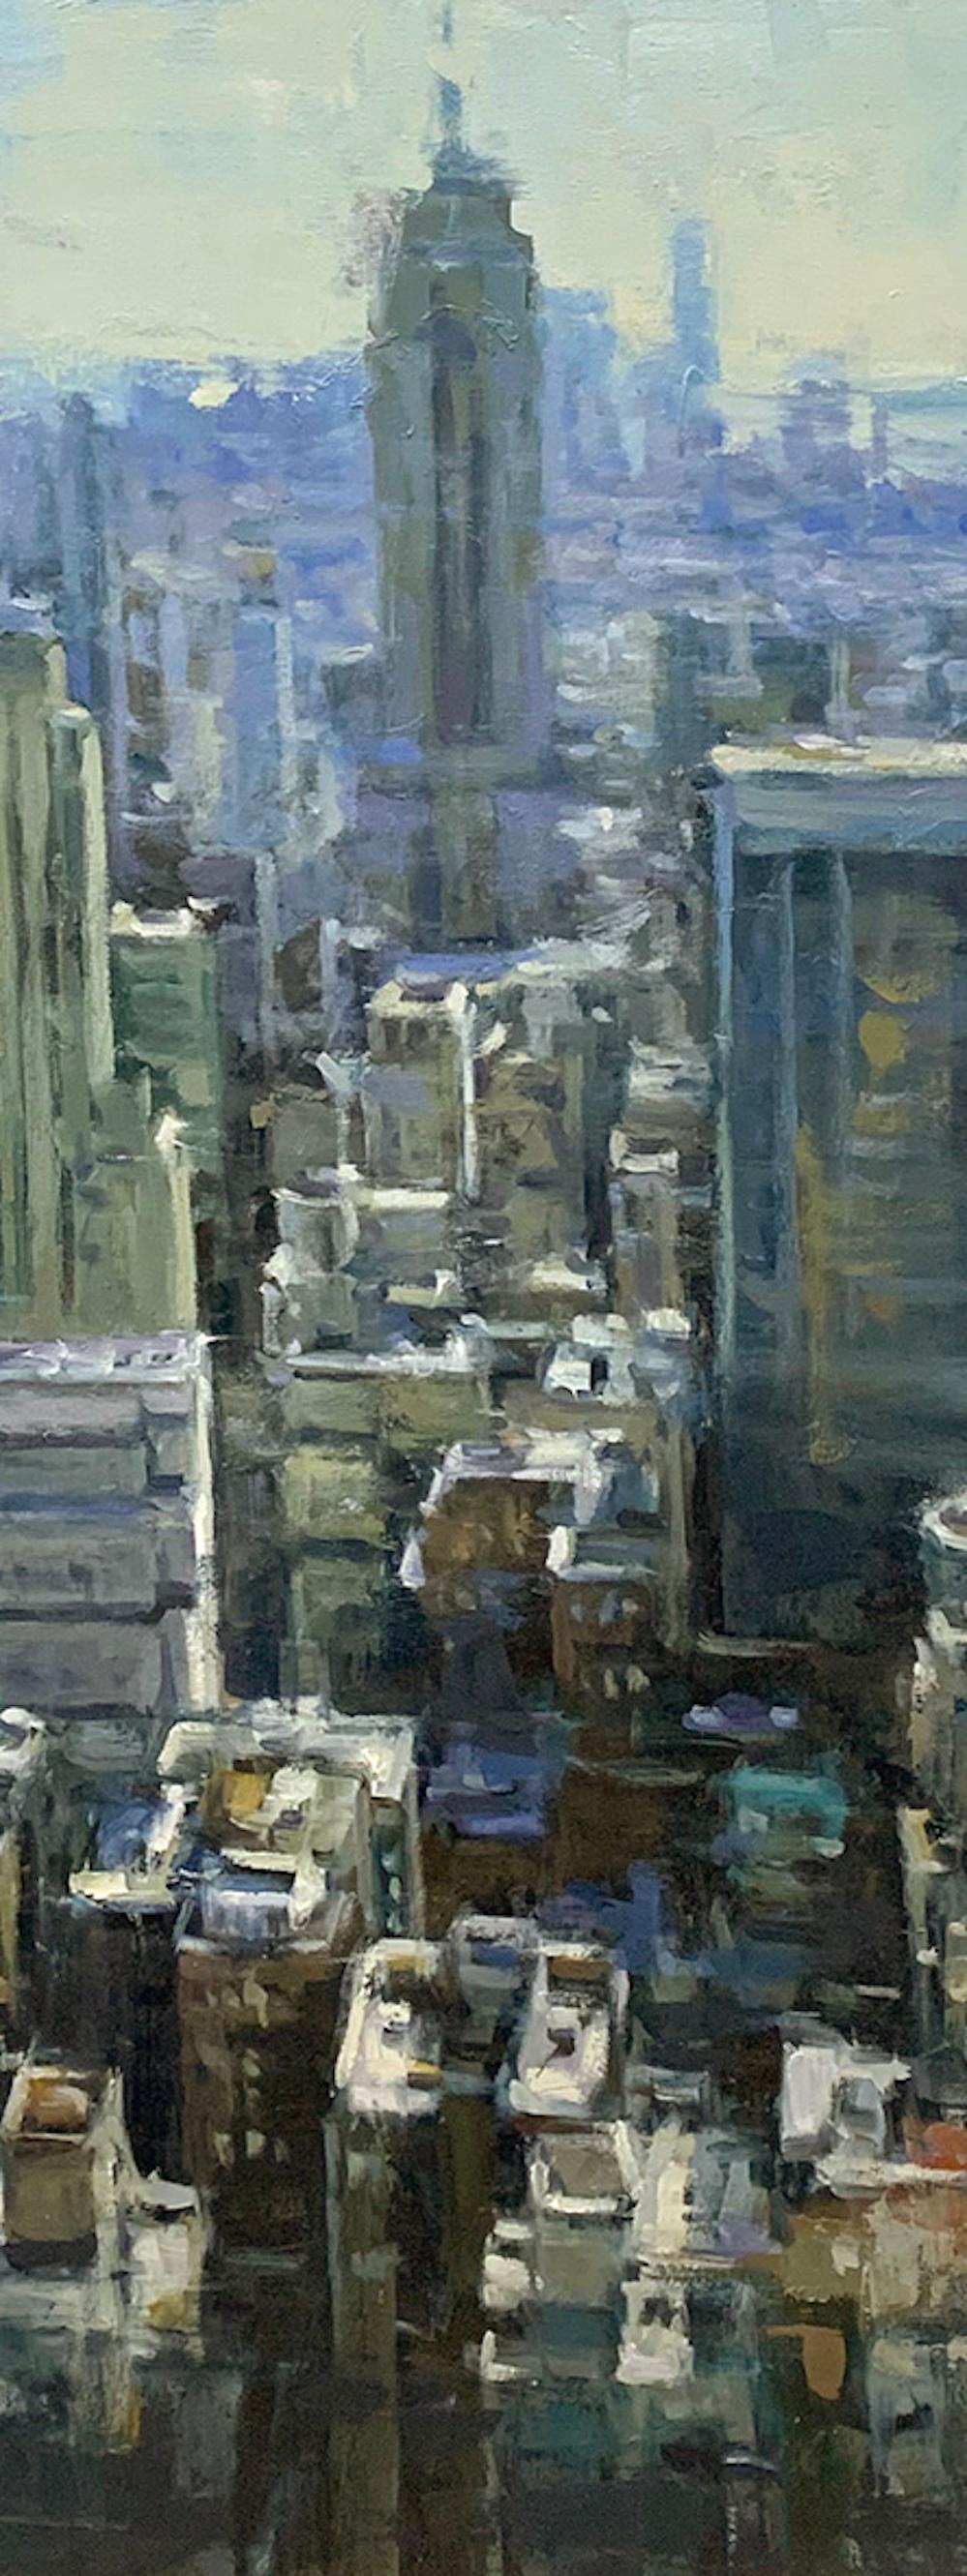 « L'État de l'Empire »  Scène impressionniste contemporaine de la ville de New York - Painting de Pil Ho Lee